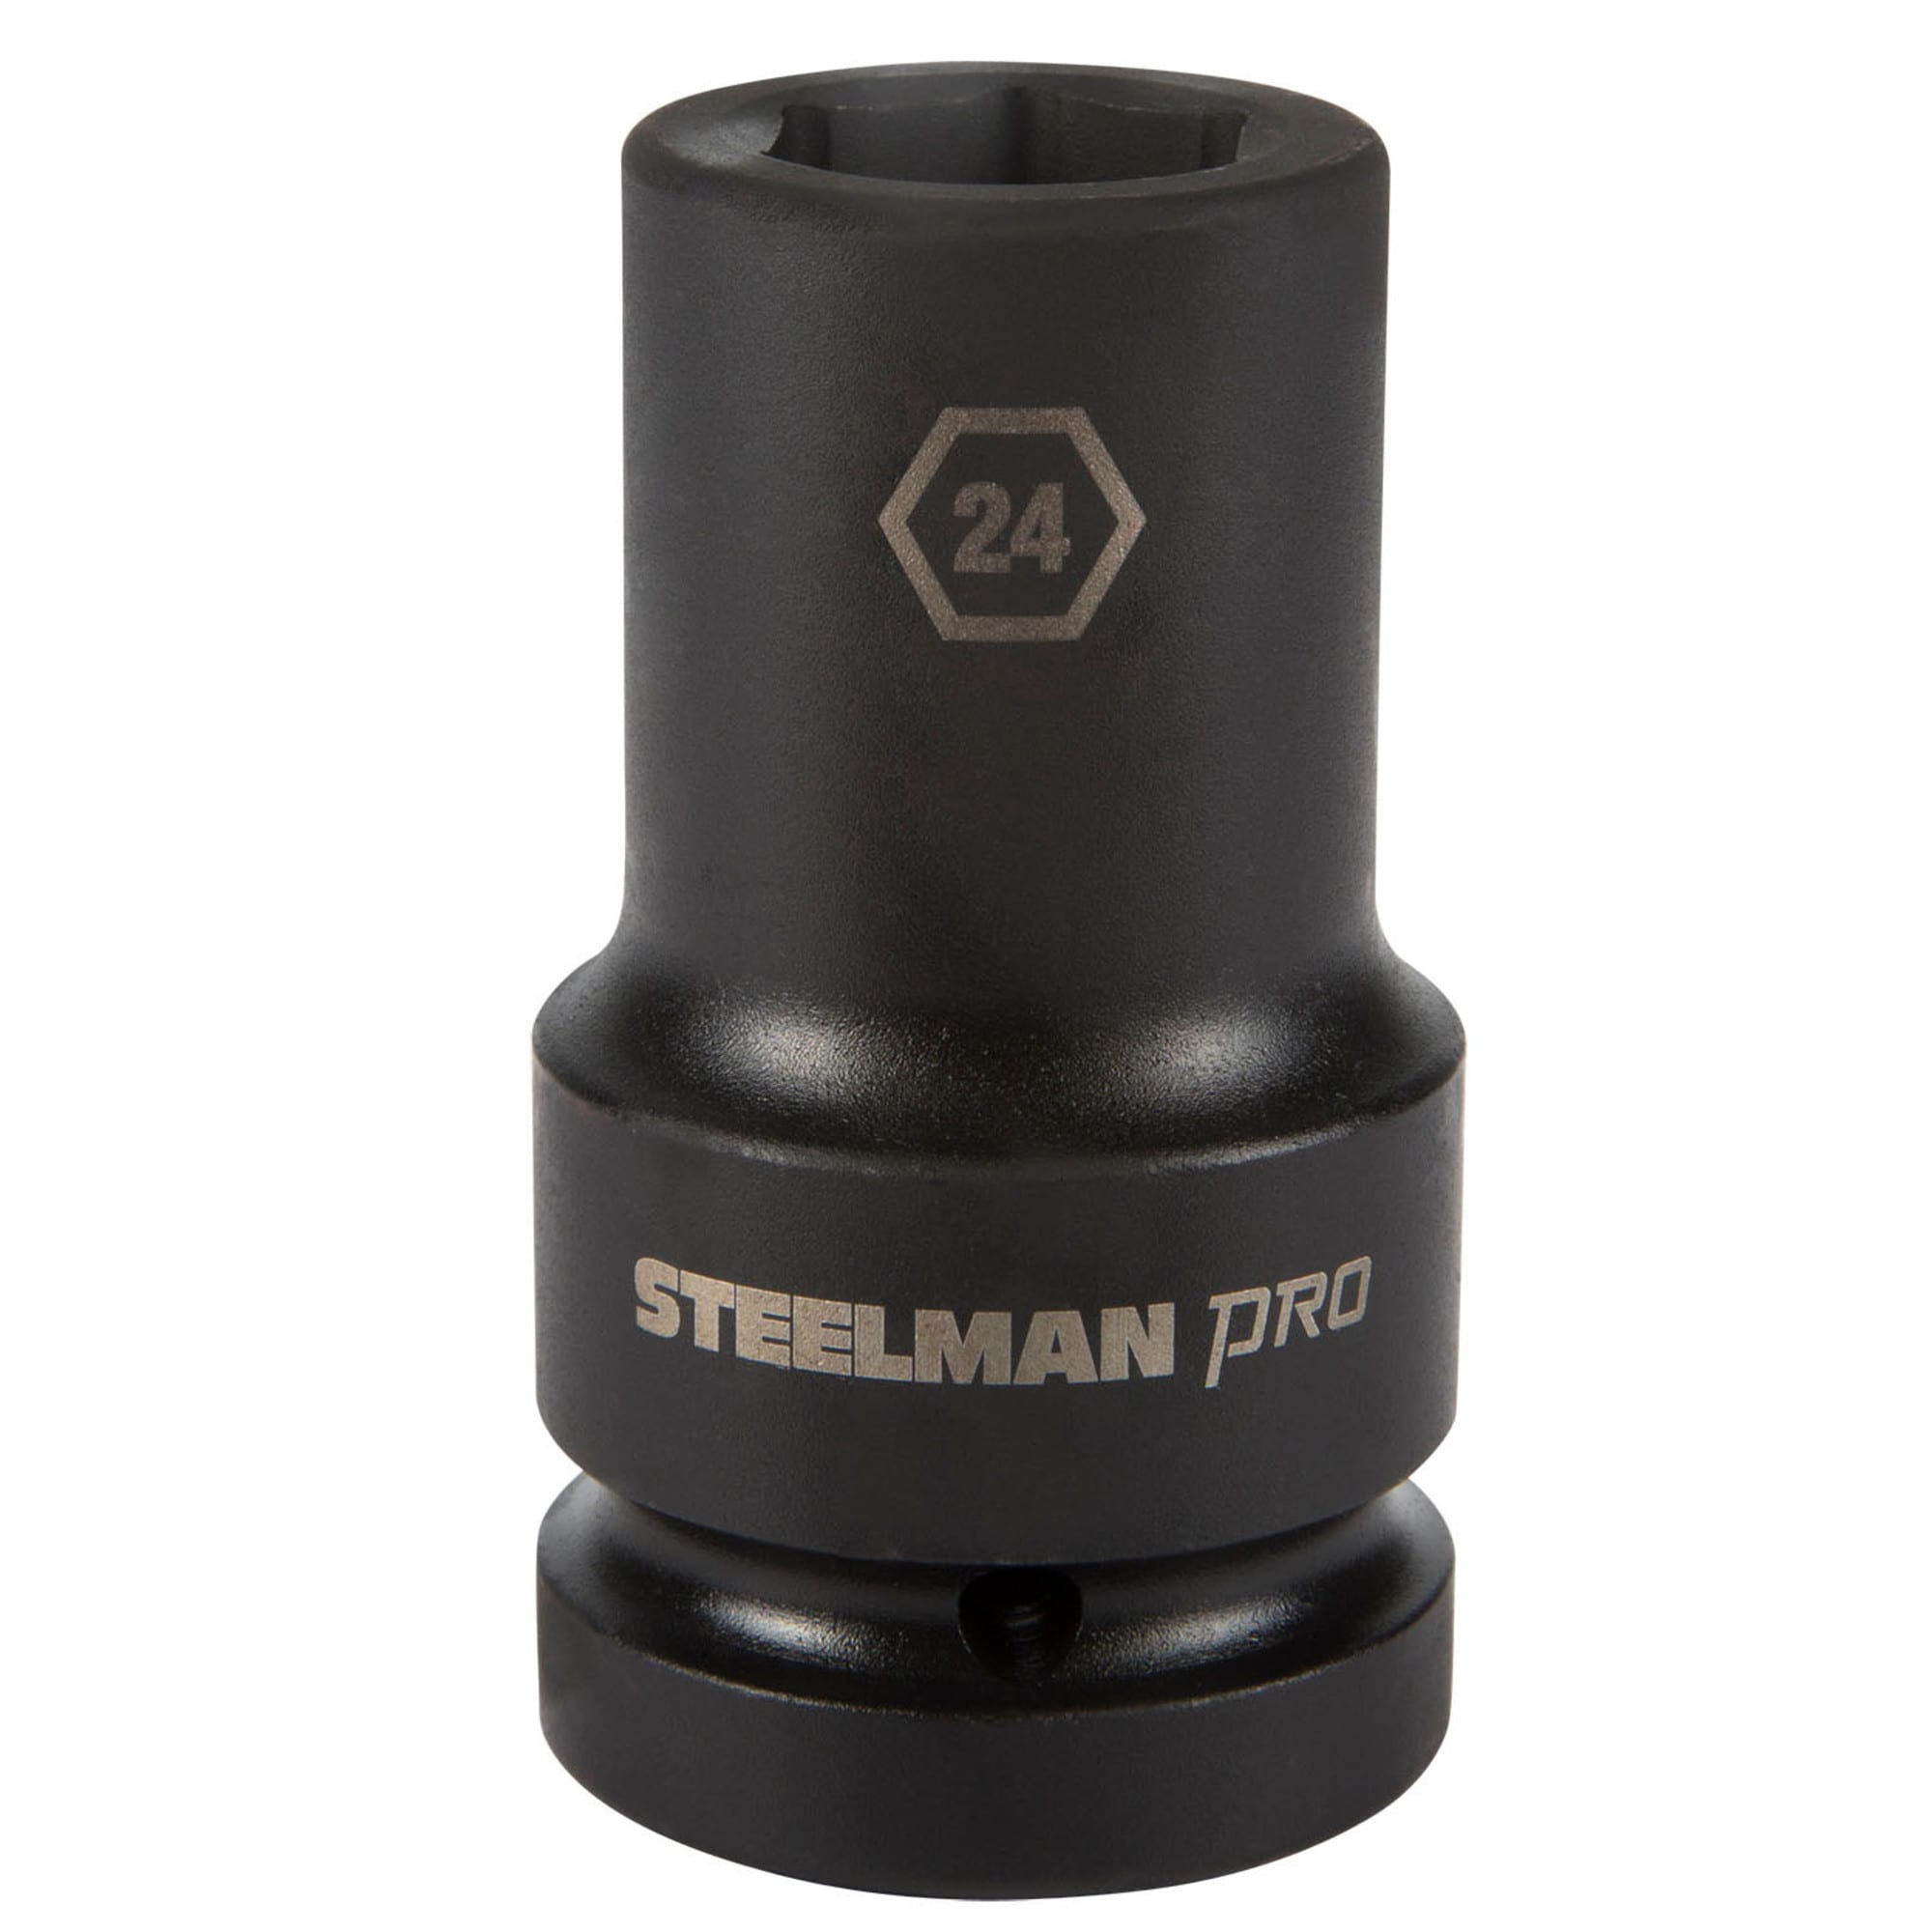 STEELMAN PRO Metric 1/2-in Drive 17Mm 6-point Impact Socket in the